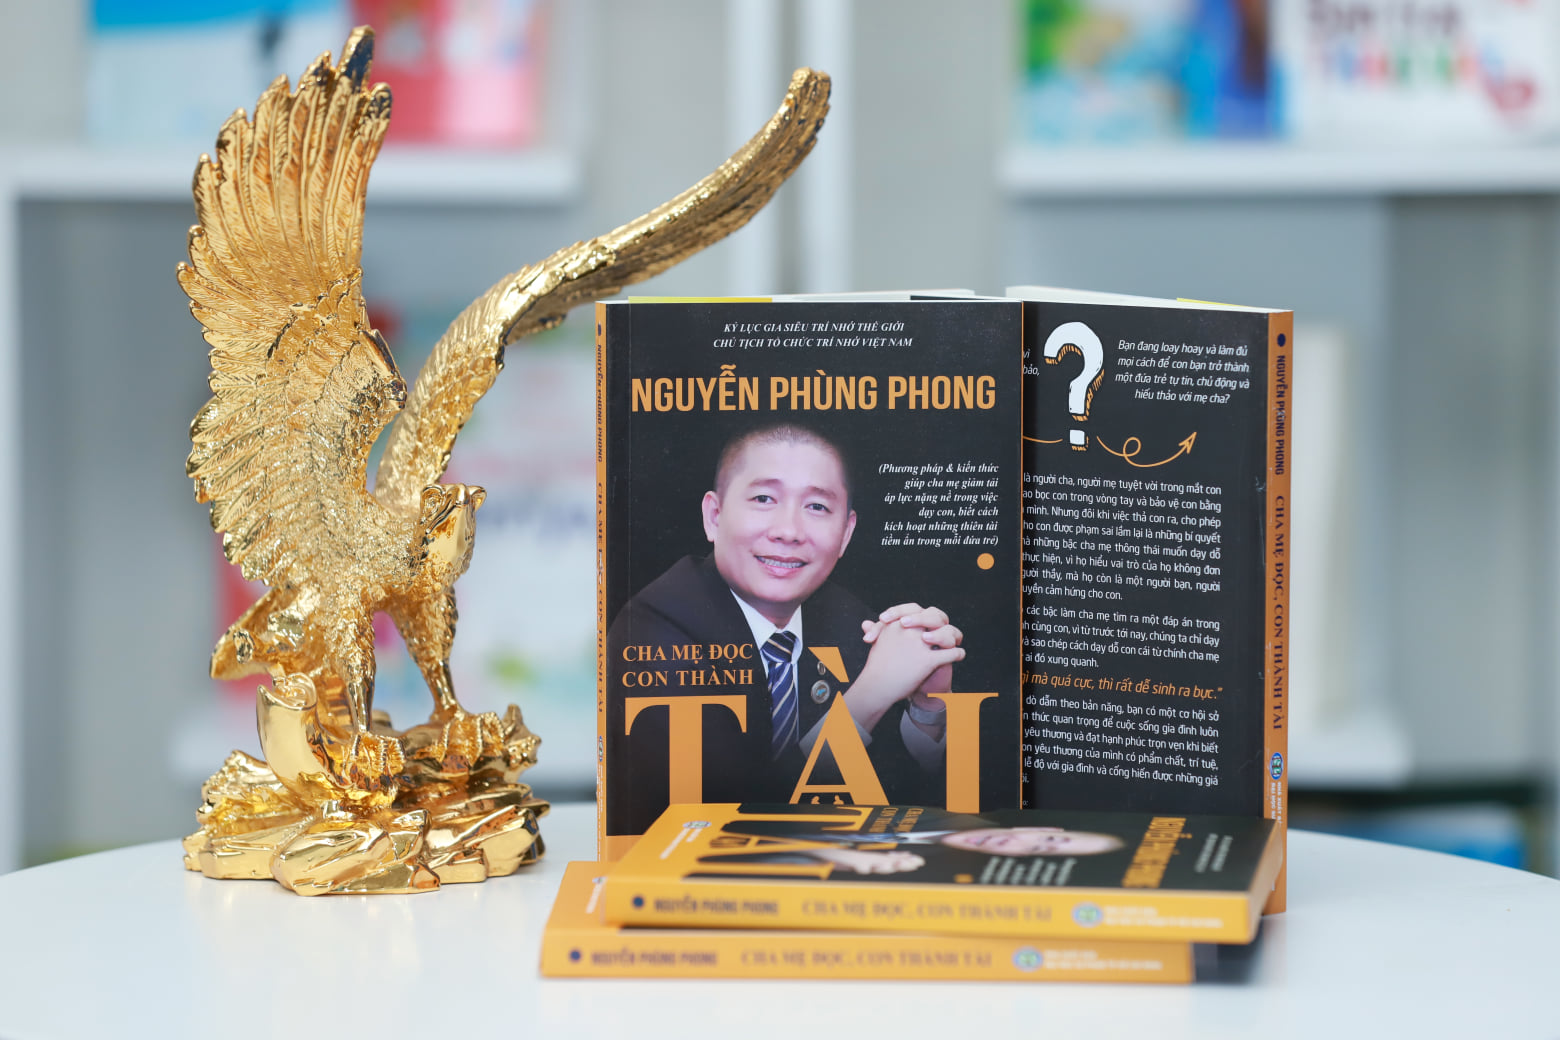 Sách Cha mẹ học con thành tài - Nguyễn Phùng Phong